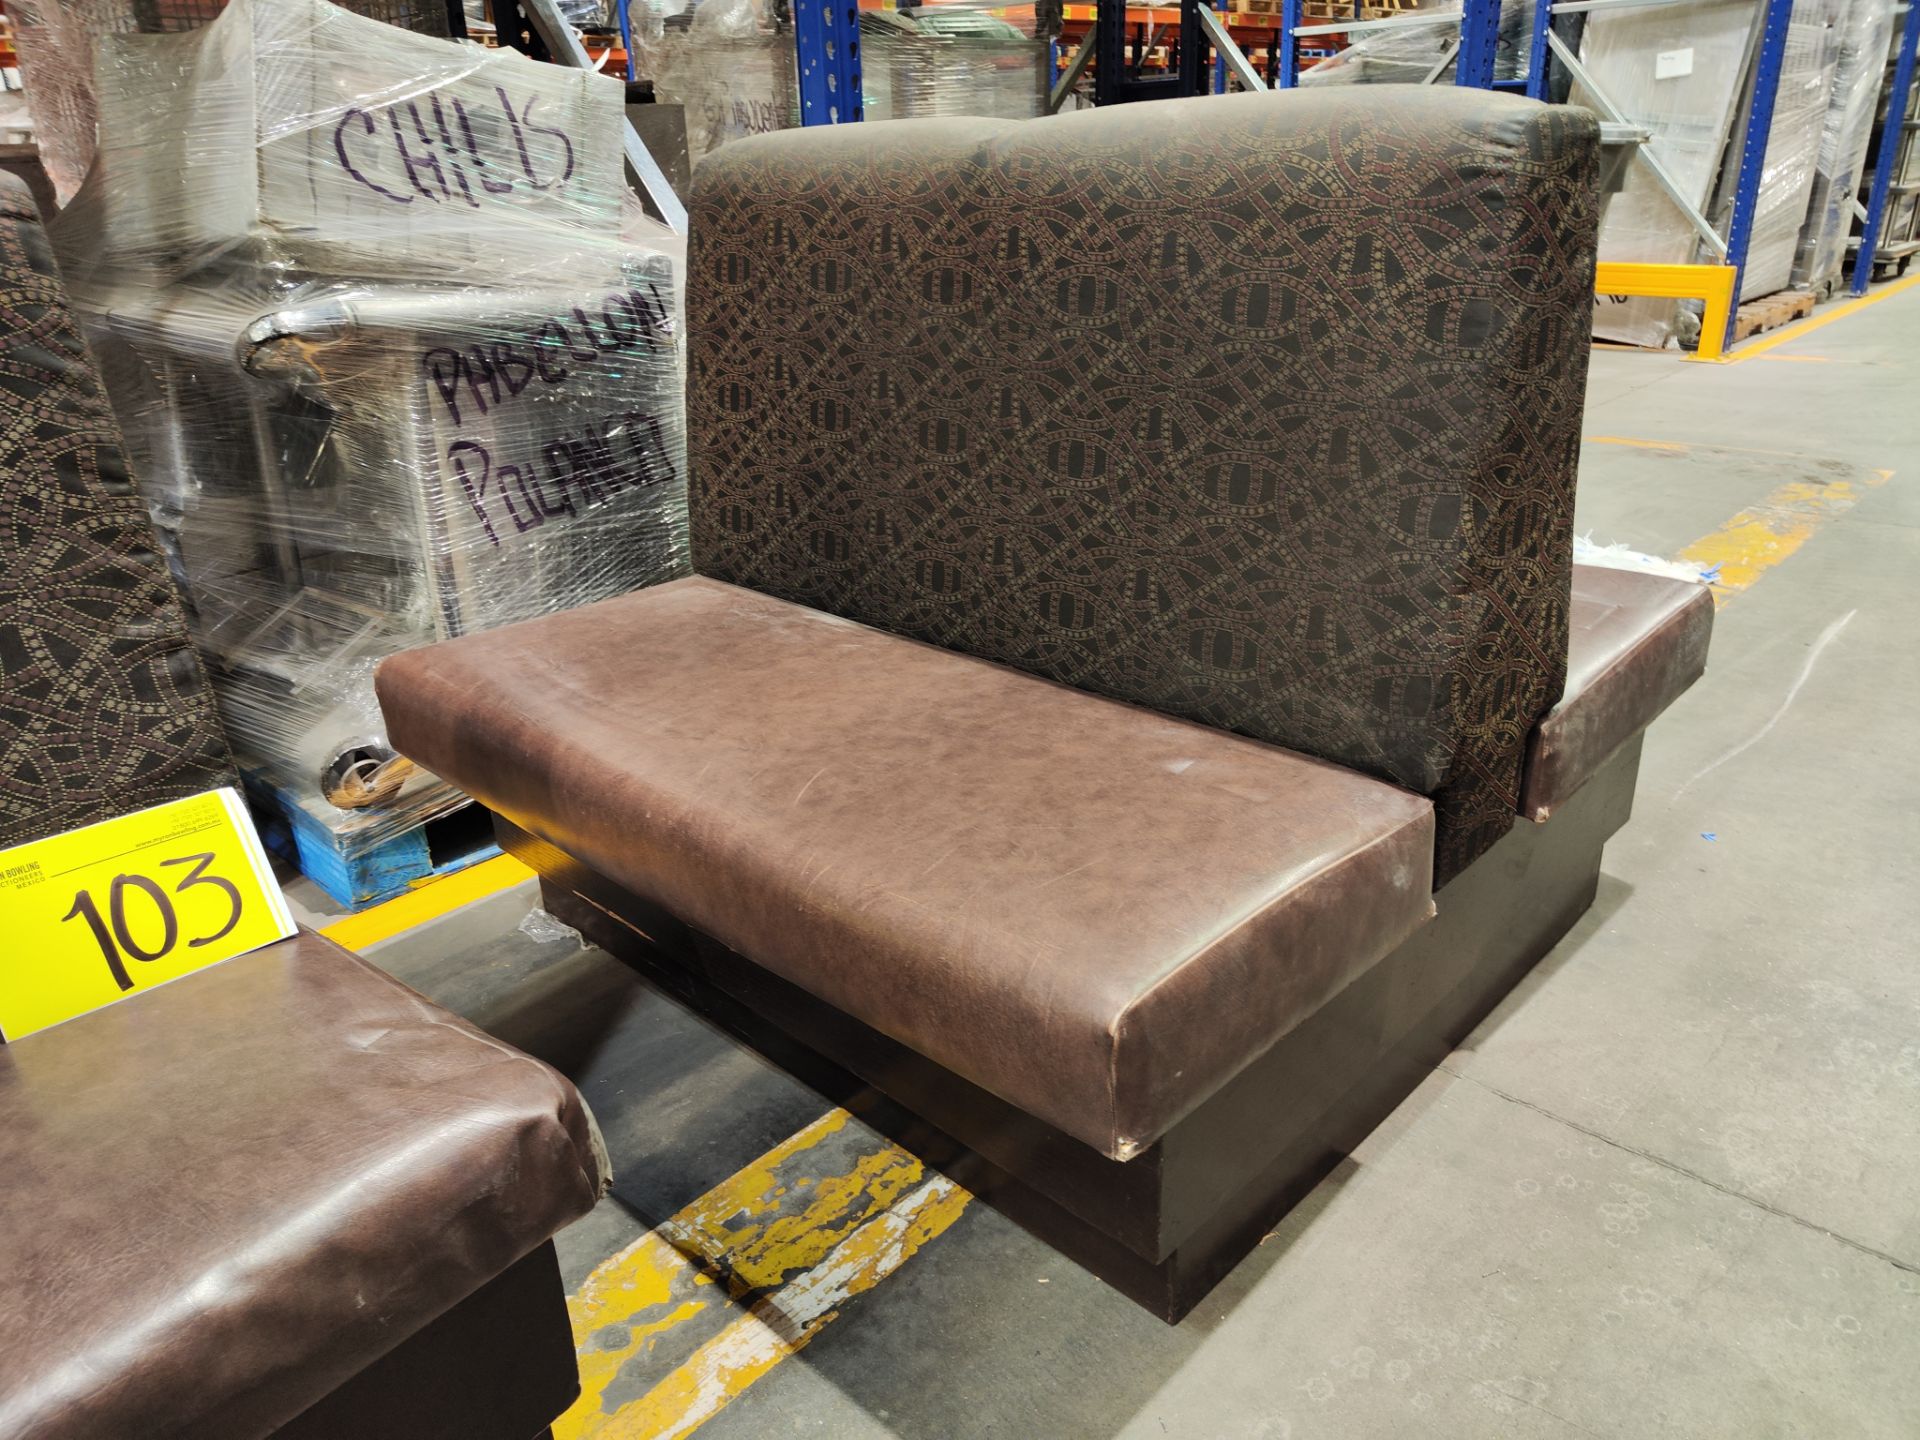 Lote de 2 piezas contiene: 1 sillón doble tipo boot en madera con asientos en tela tipo vinipiel co - Image 5 of 6